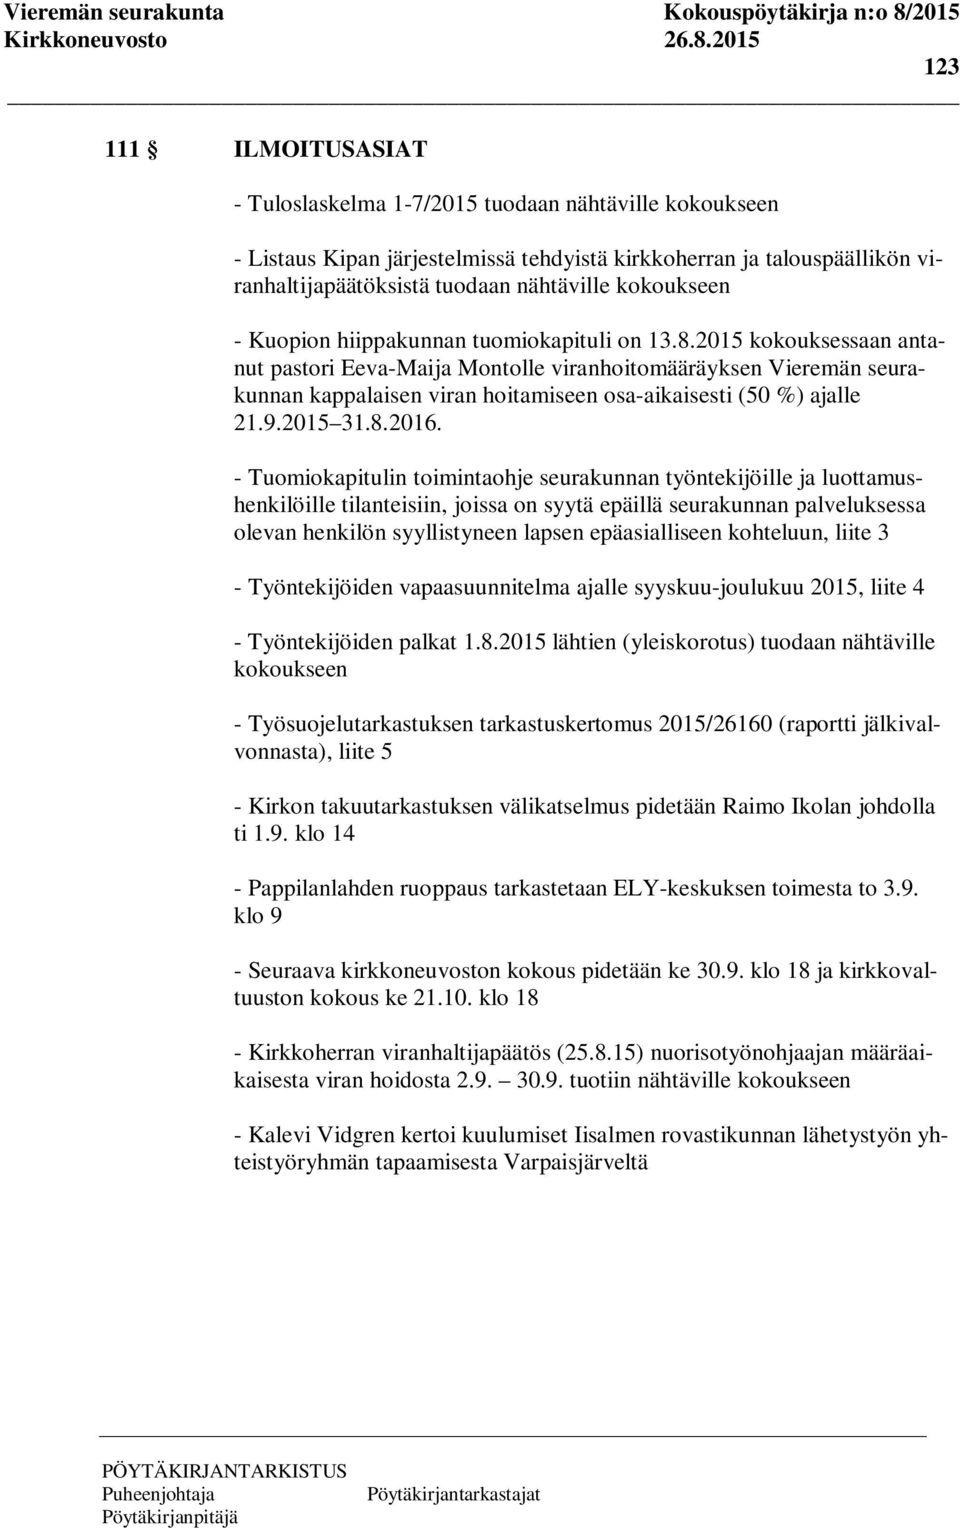 2015 kokouksessaan antanut pastori Eeva-Maija Montolle viranhoitomääräyksen Vieremän seurakunnan kappalaisen viran hoitamiseen osa-aikaisesti (50 %) ajalle 21.9.2015 31.8.2016.